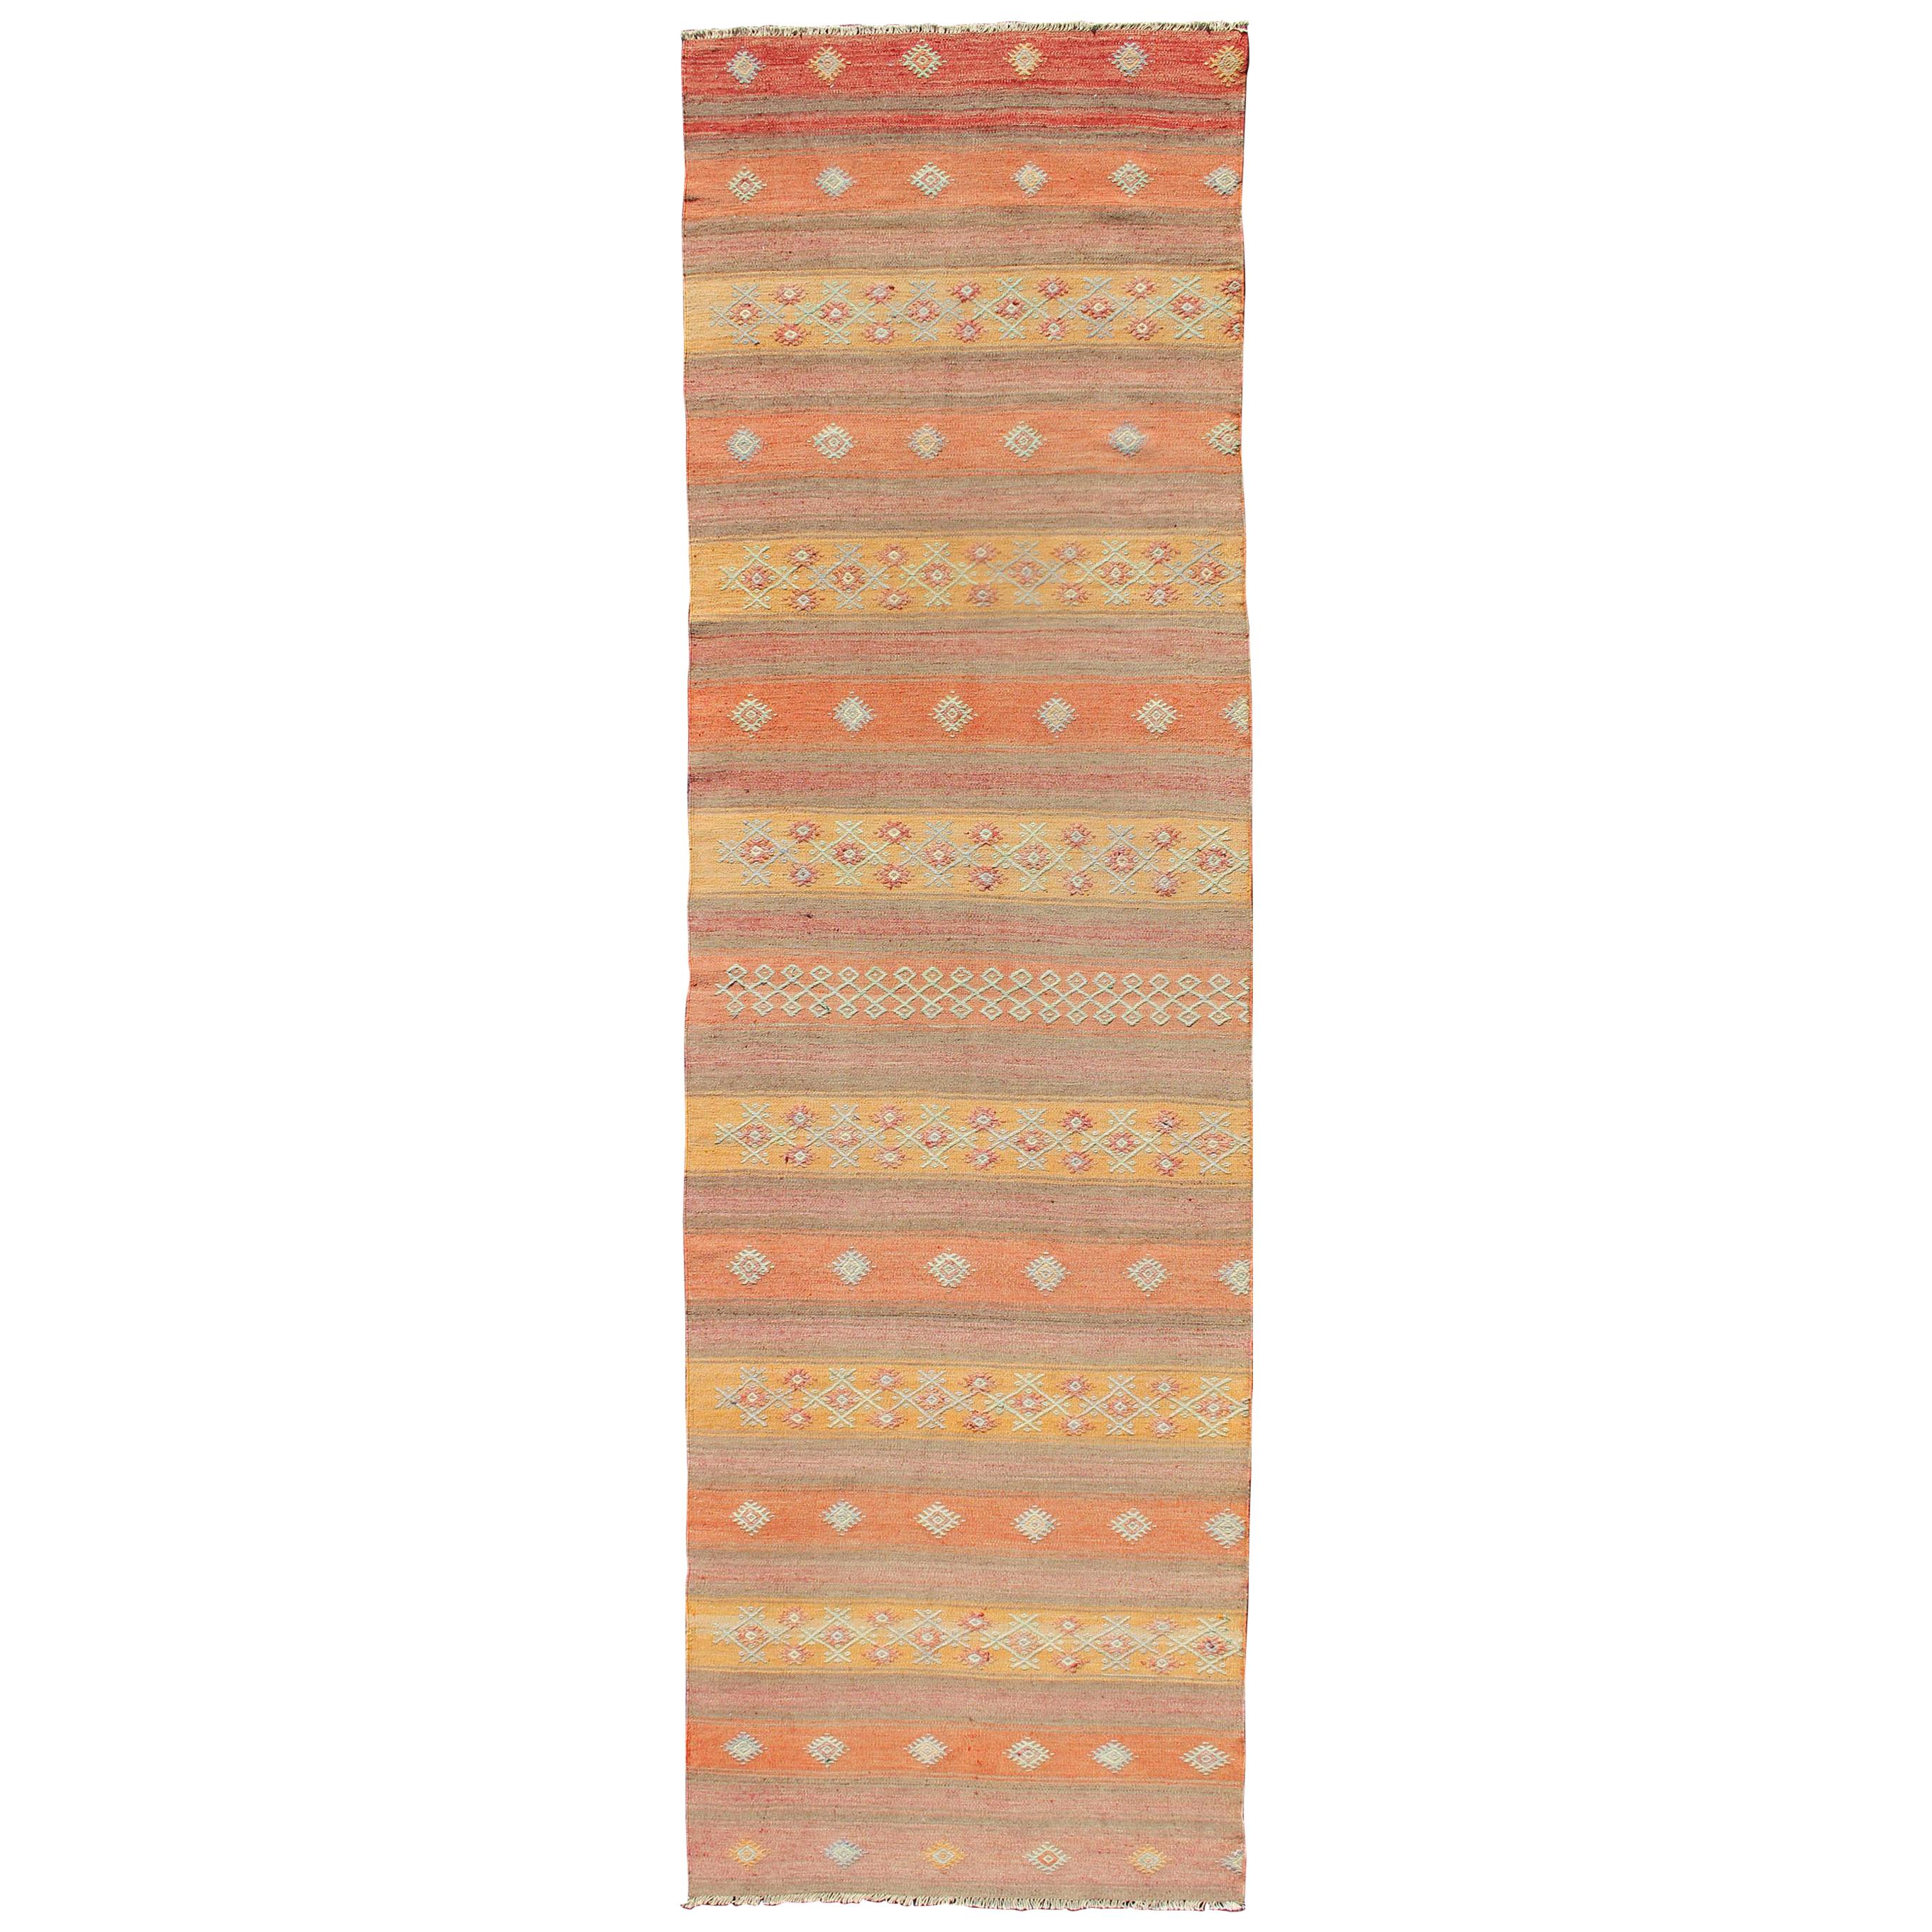 Tapis Kilim turc vintage coloré à rayures horizontales et formes géométriques